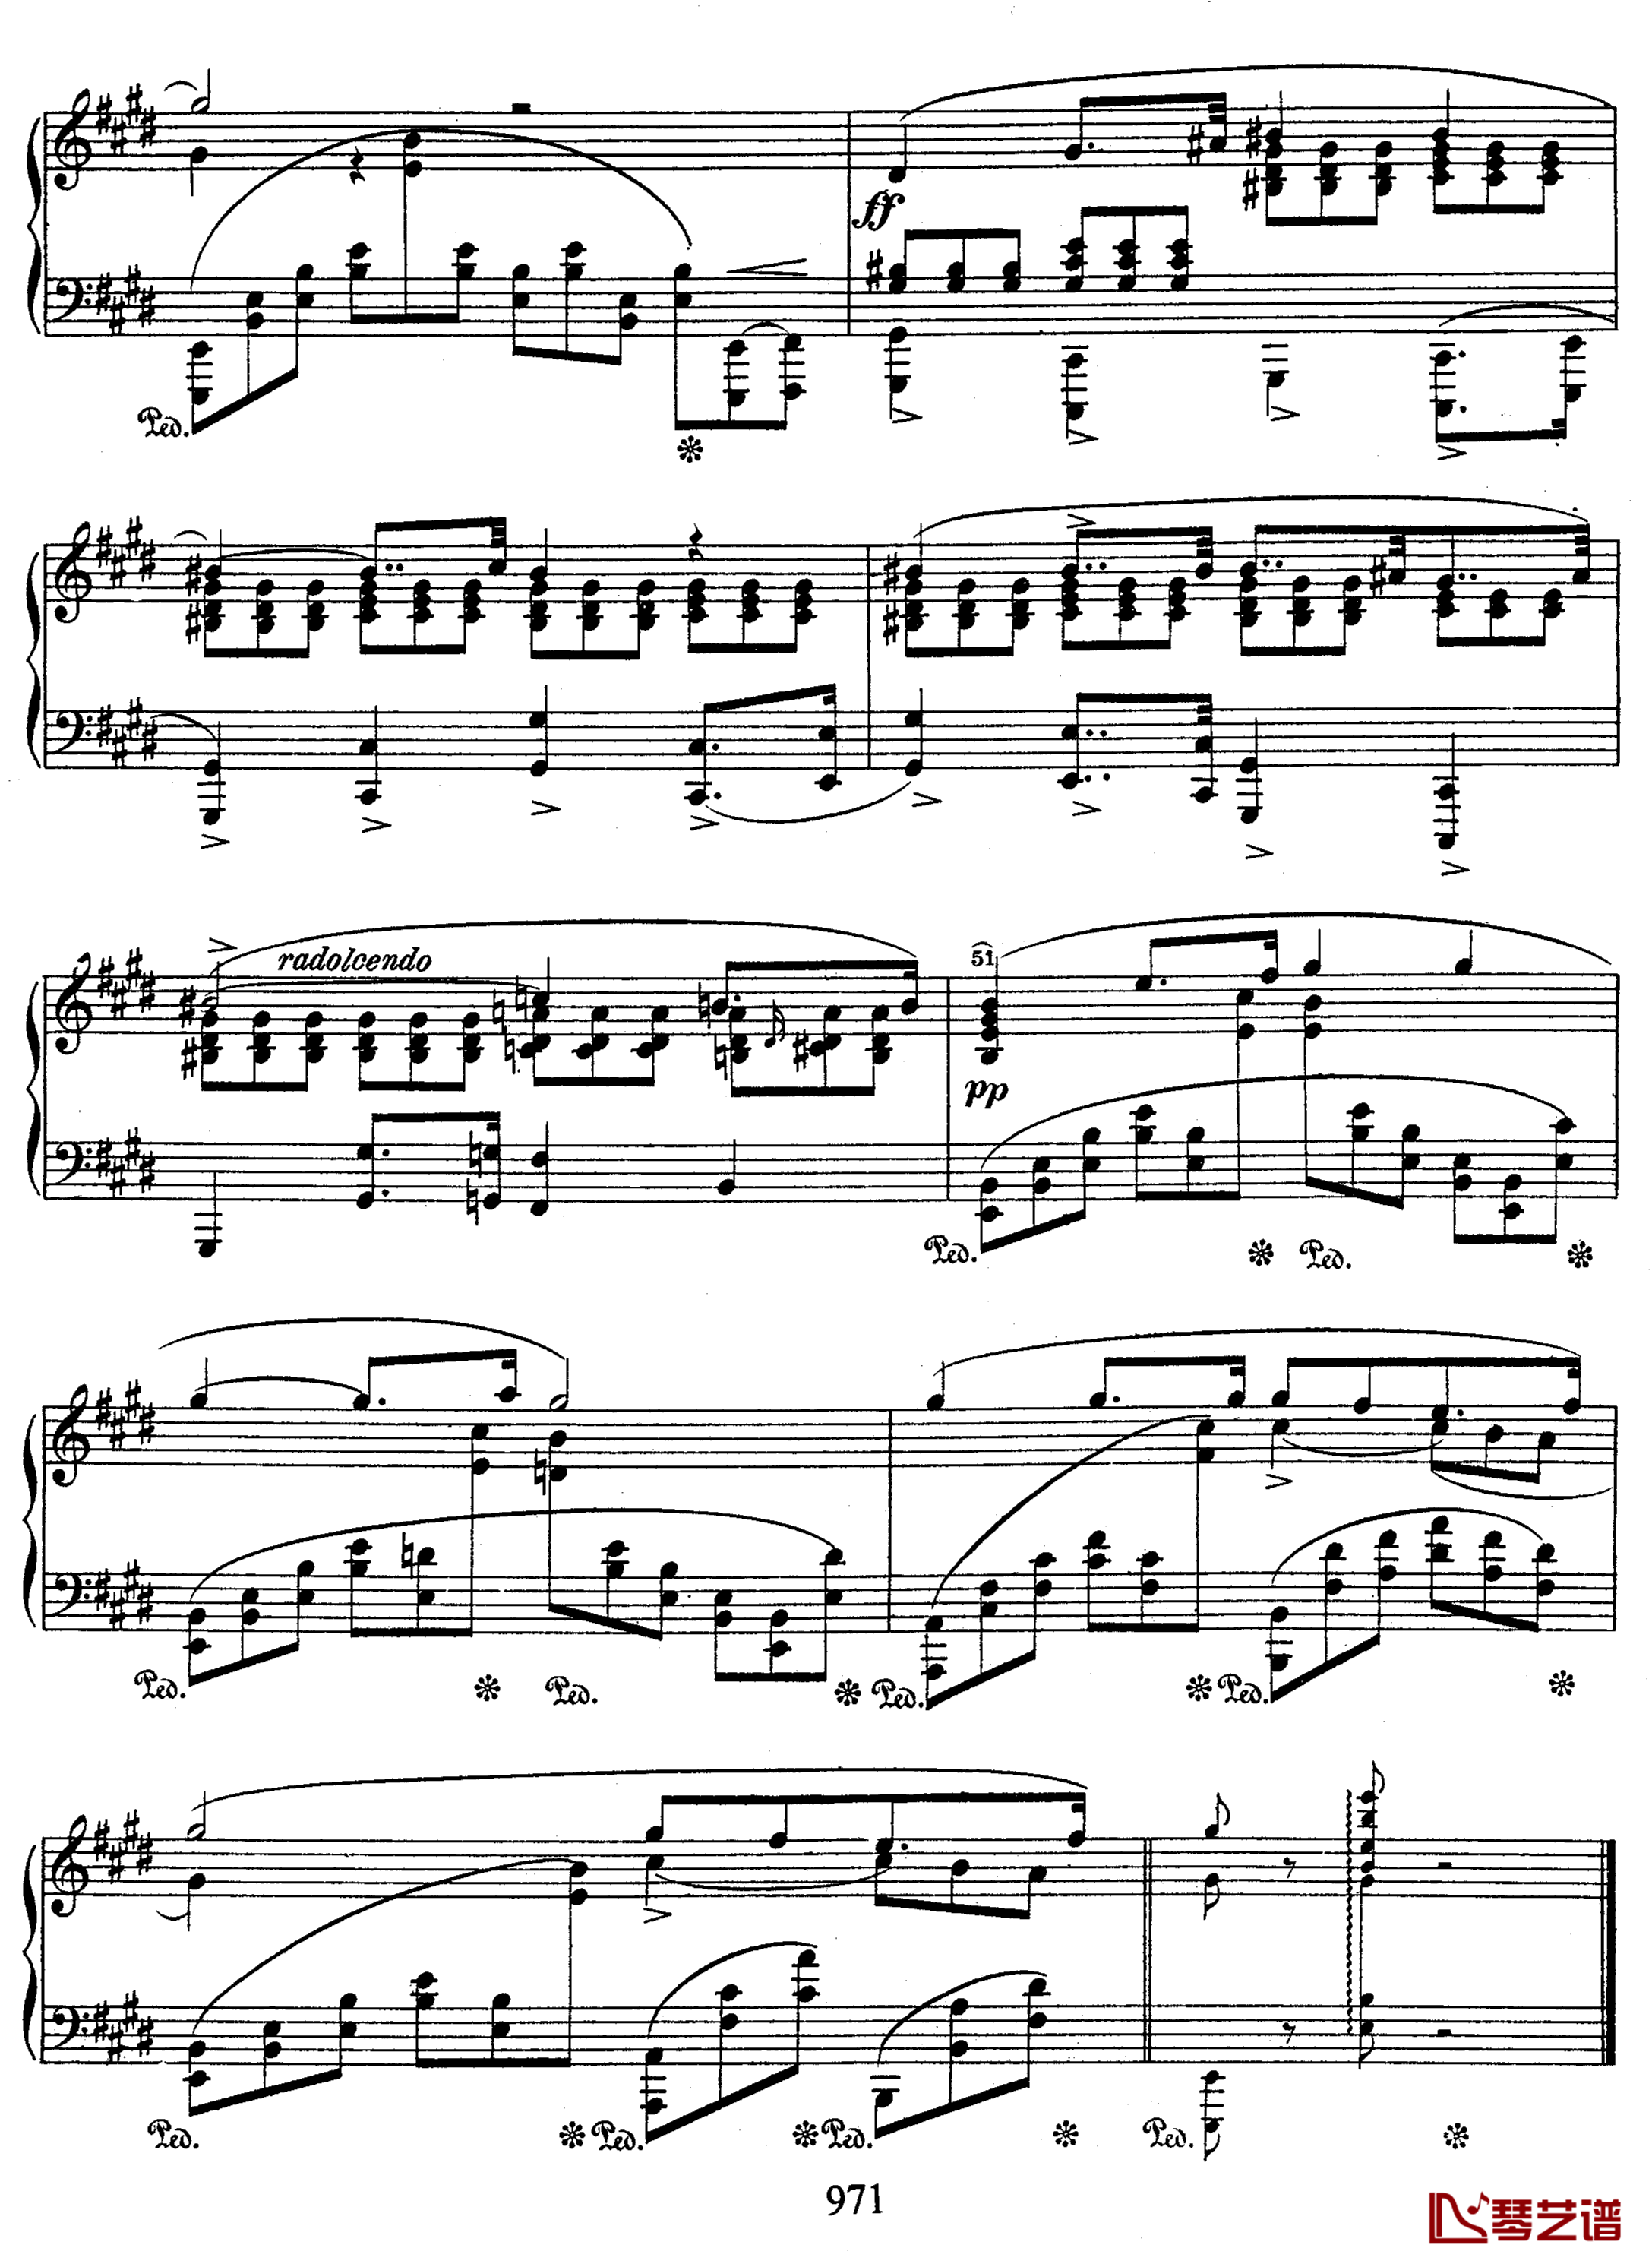 贝利尼主题变奏曲钢琴谱-肖邦-chopin2